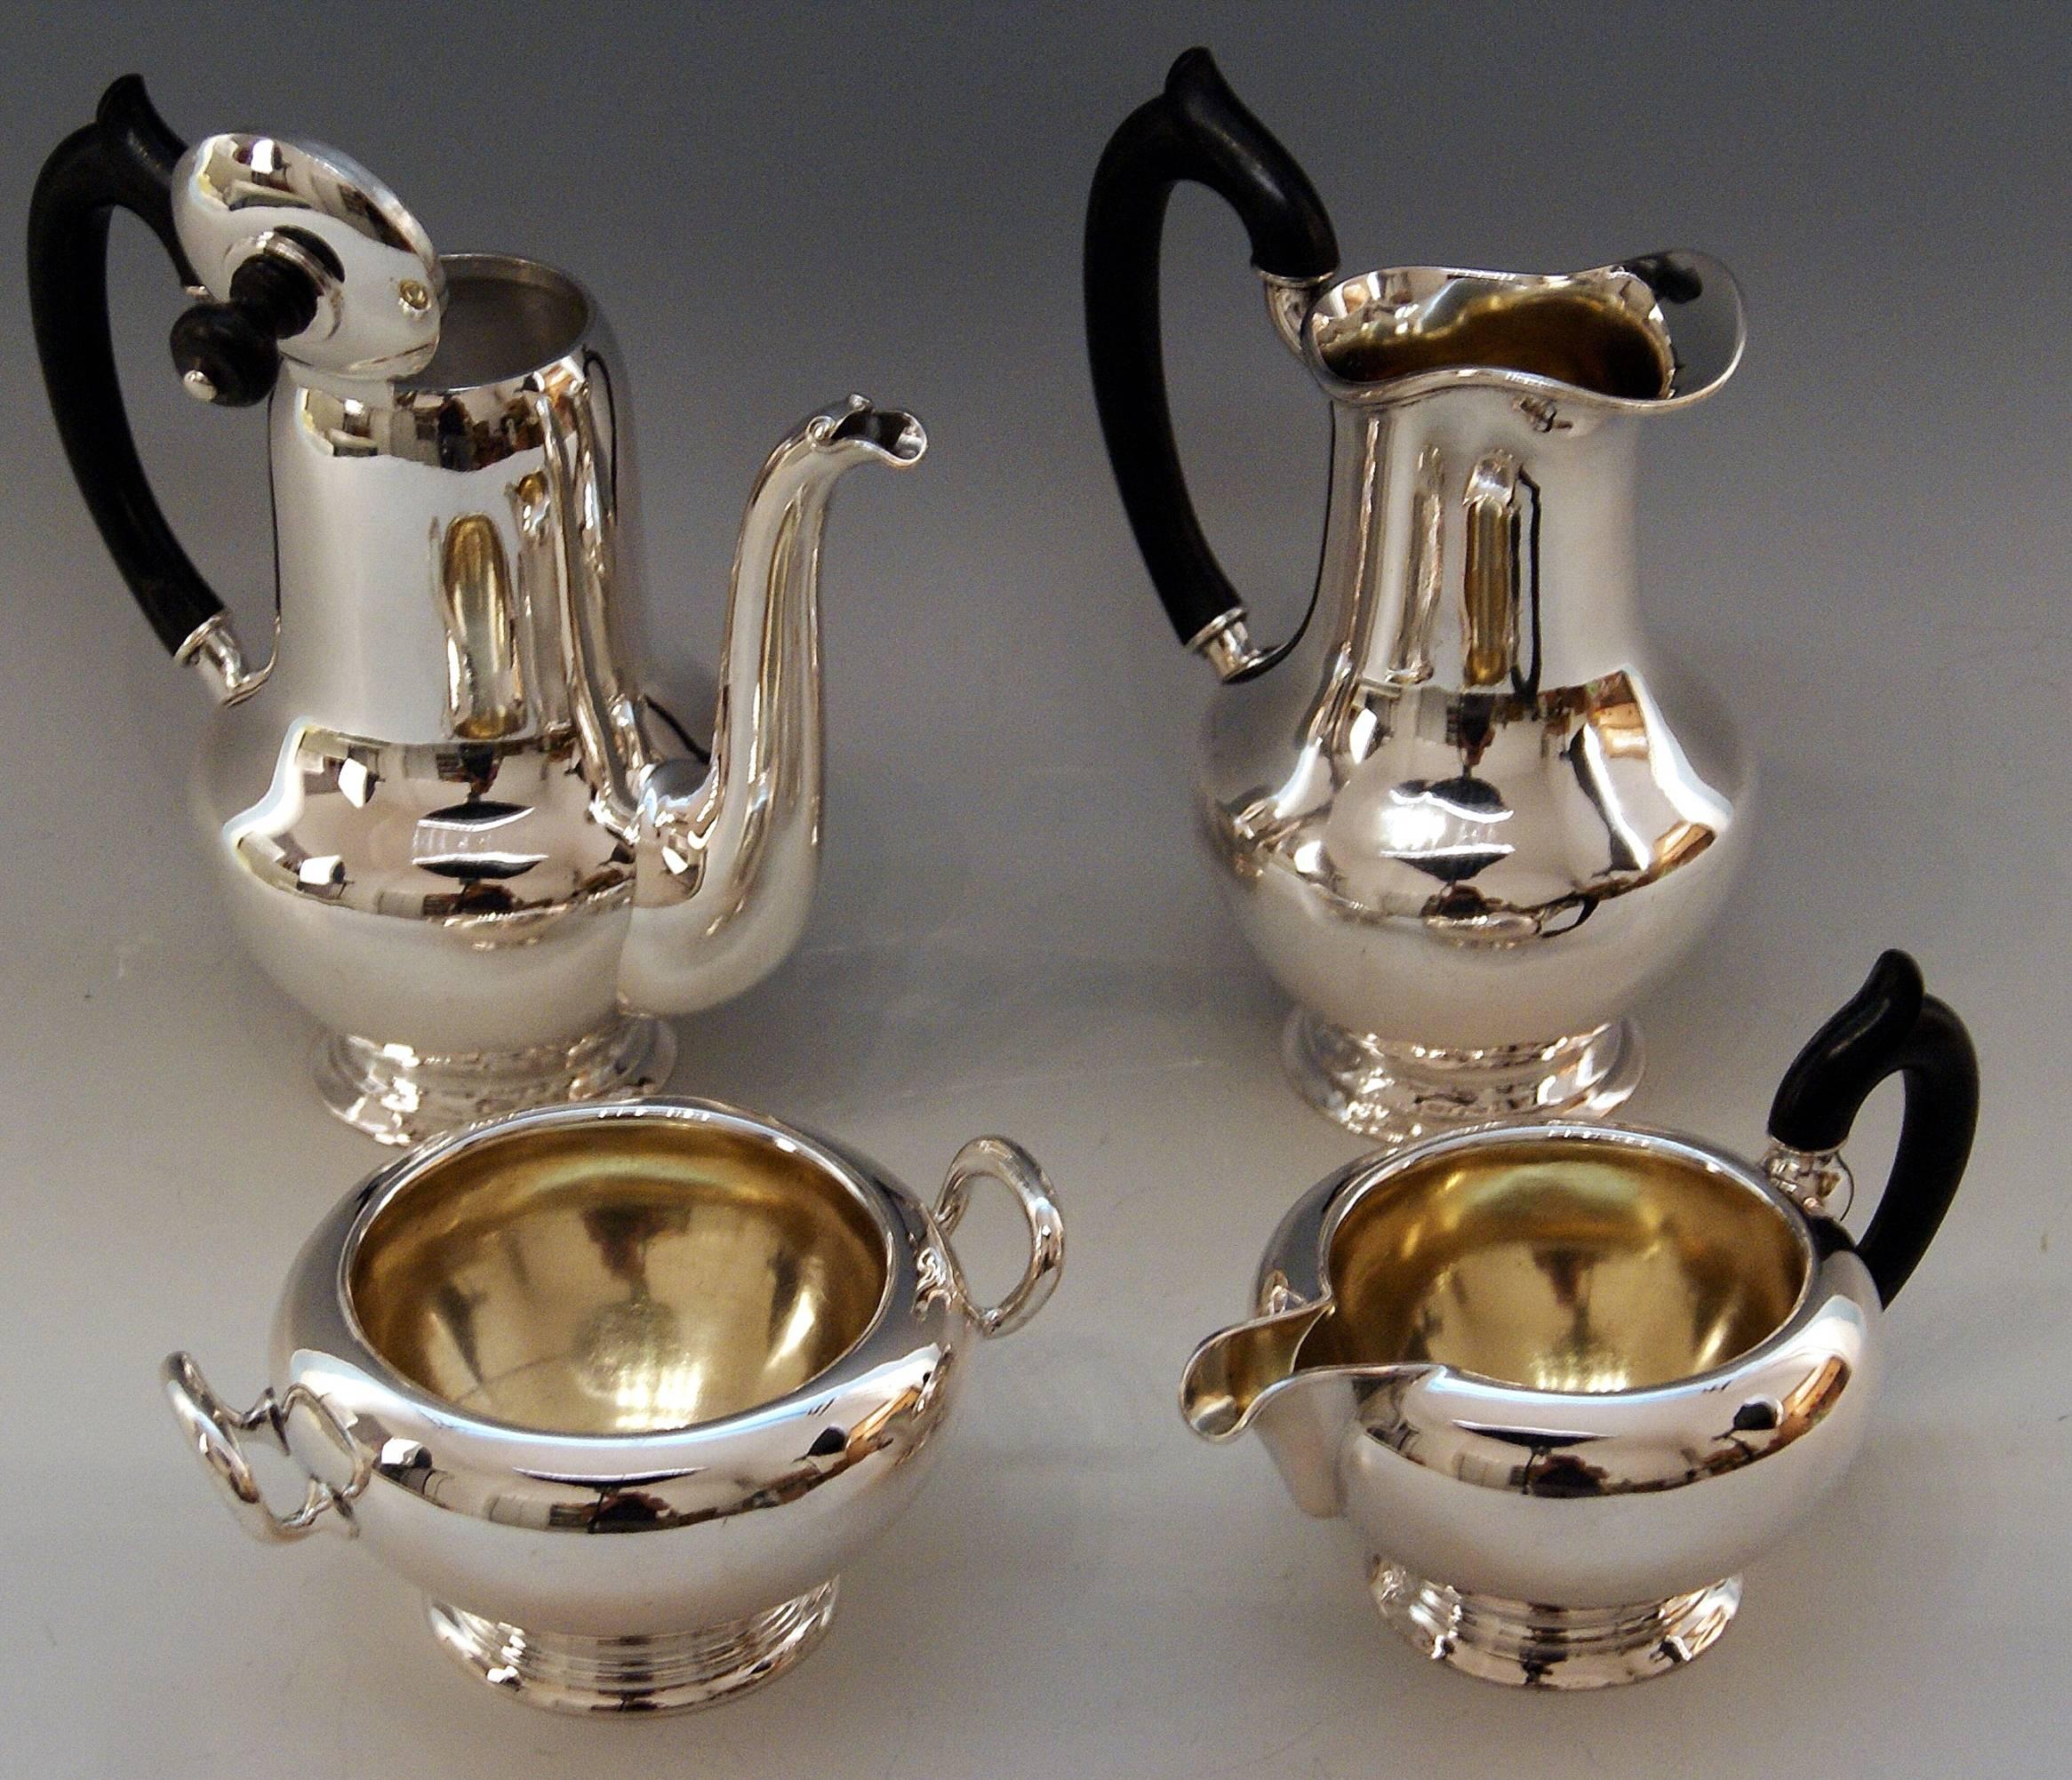 Art Deco Silver Austria Vienna Coffee Pot Milk Pot Sugar Bowl Creamer Klinkosch 1922-1925 For Sale